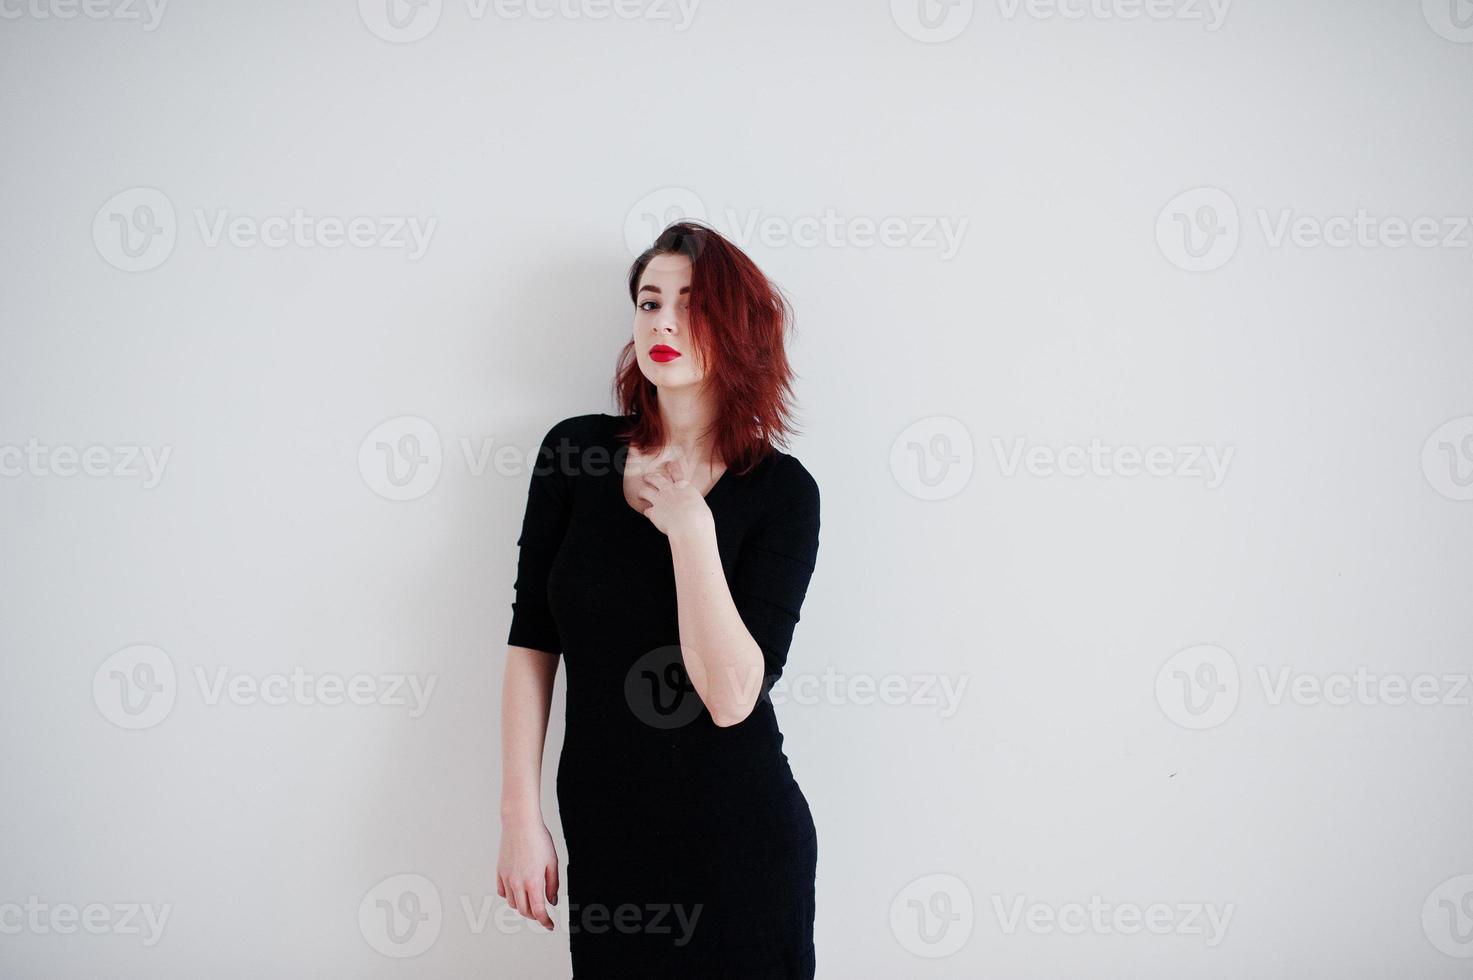 chica pelirroja con túnica de vestido negro contra la pared blanca en la habitación vacía. foto